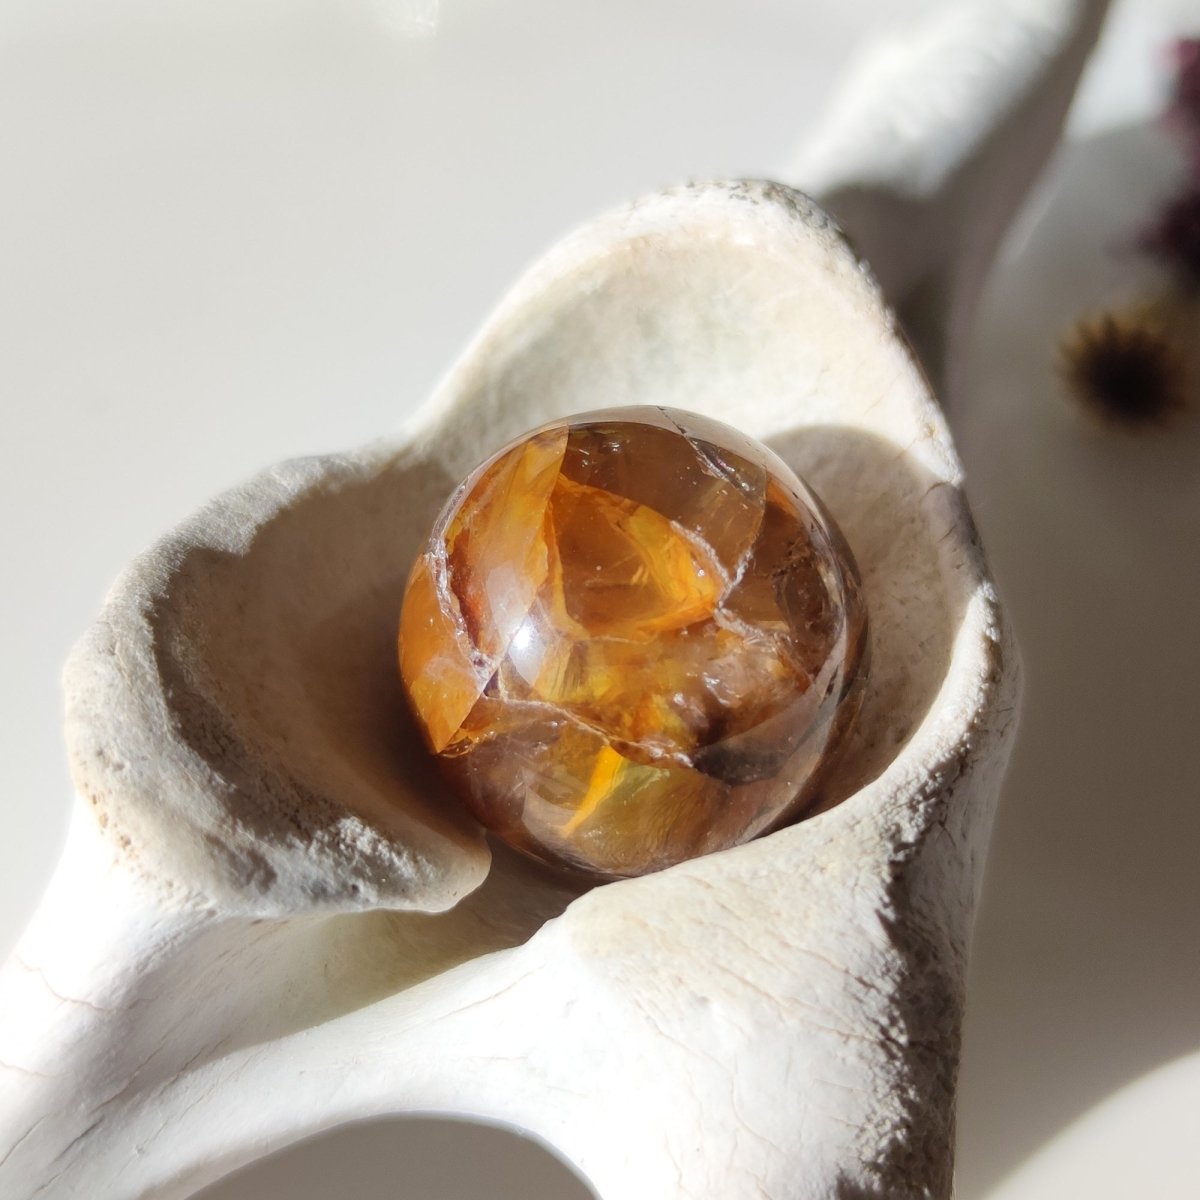 Cuarzo sanador dorado con esferas de inclusiones de dentrita - Cristales Anima Mundi